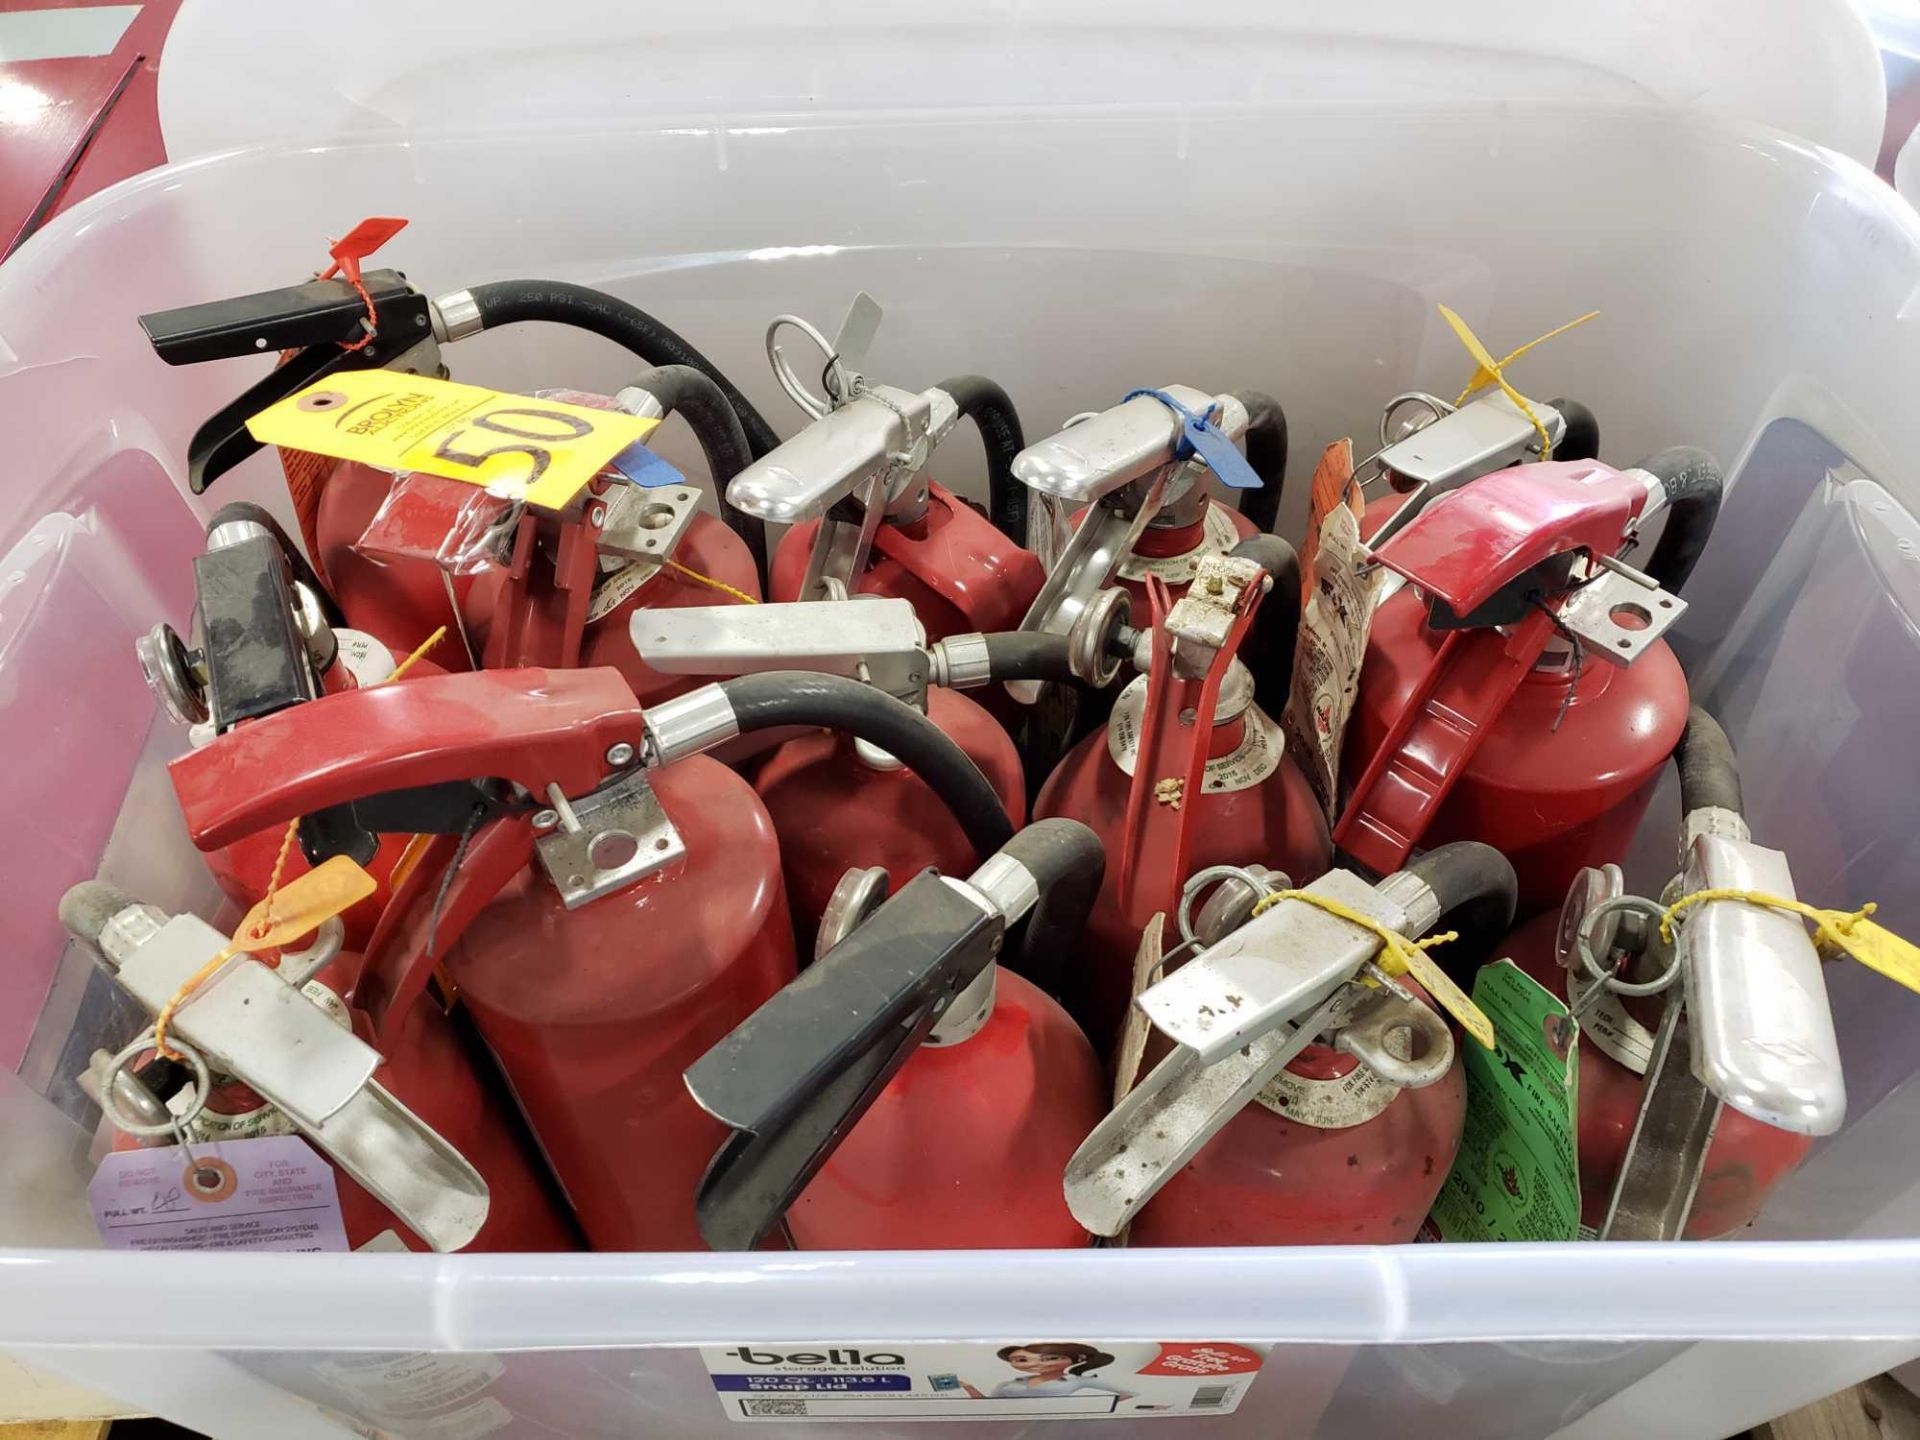 Qty 14 - Fire extinguishers.